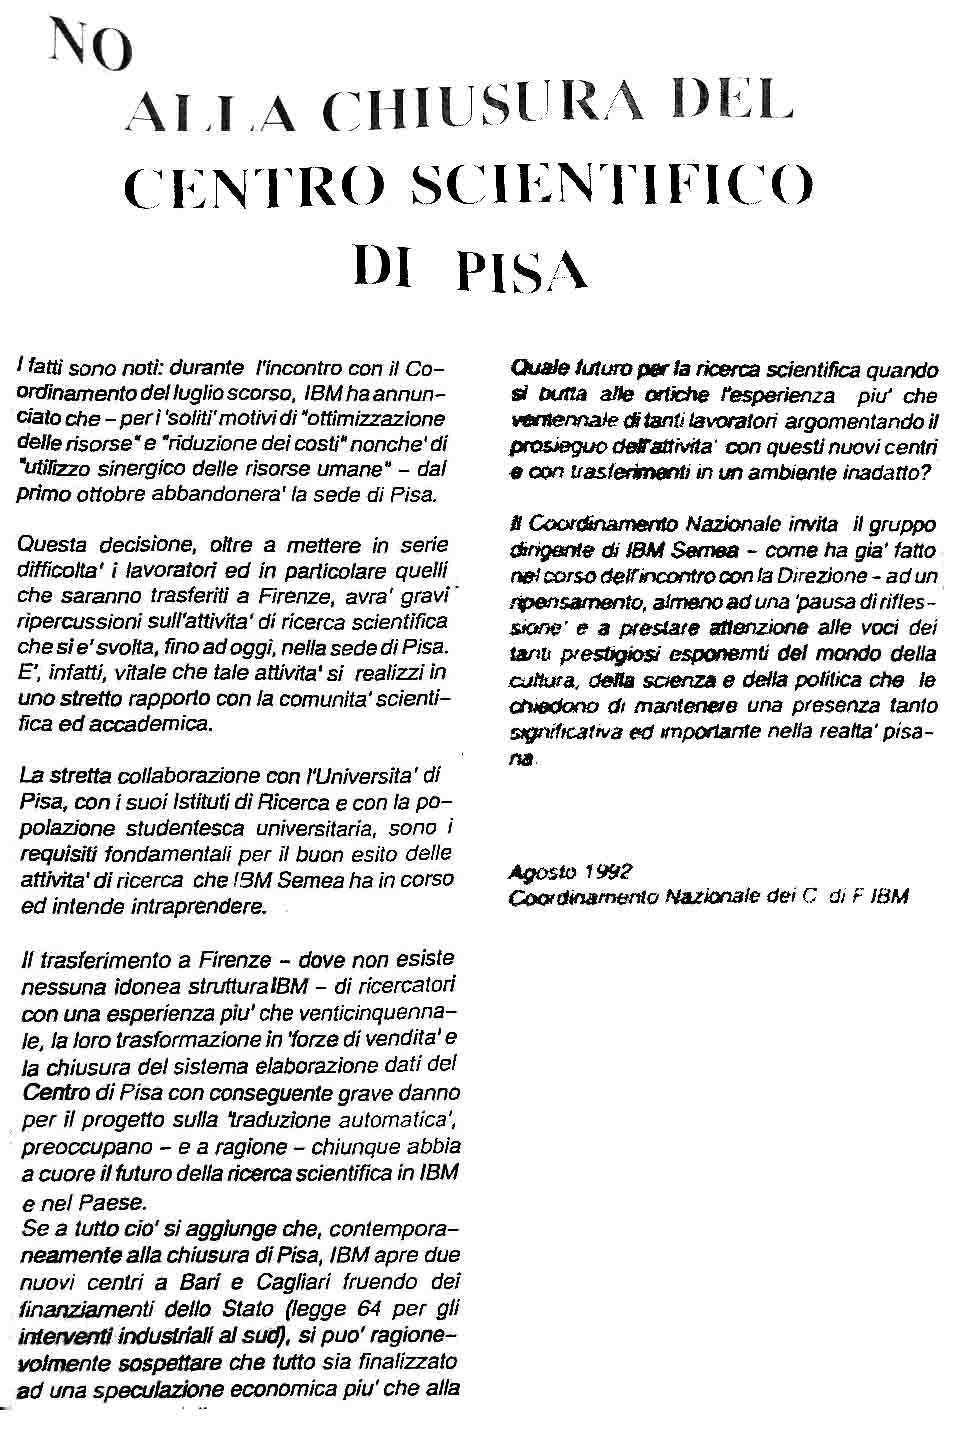 NO alla chiusura del Centro Scientifico di Pisa